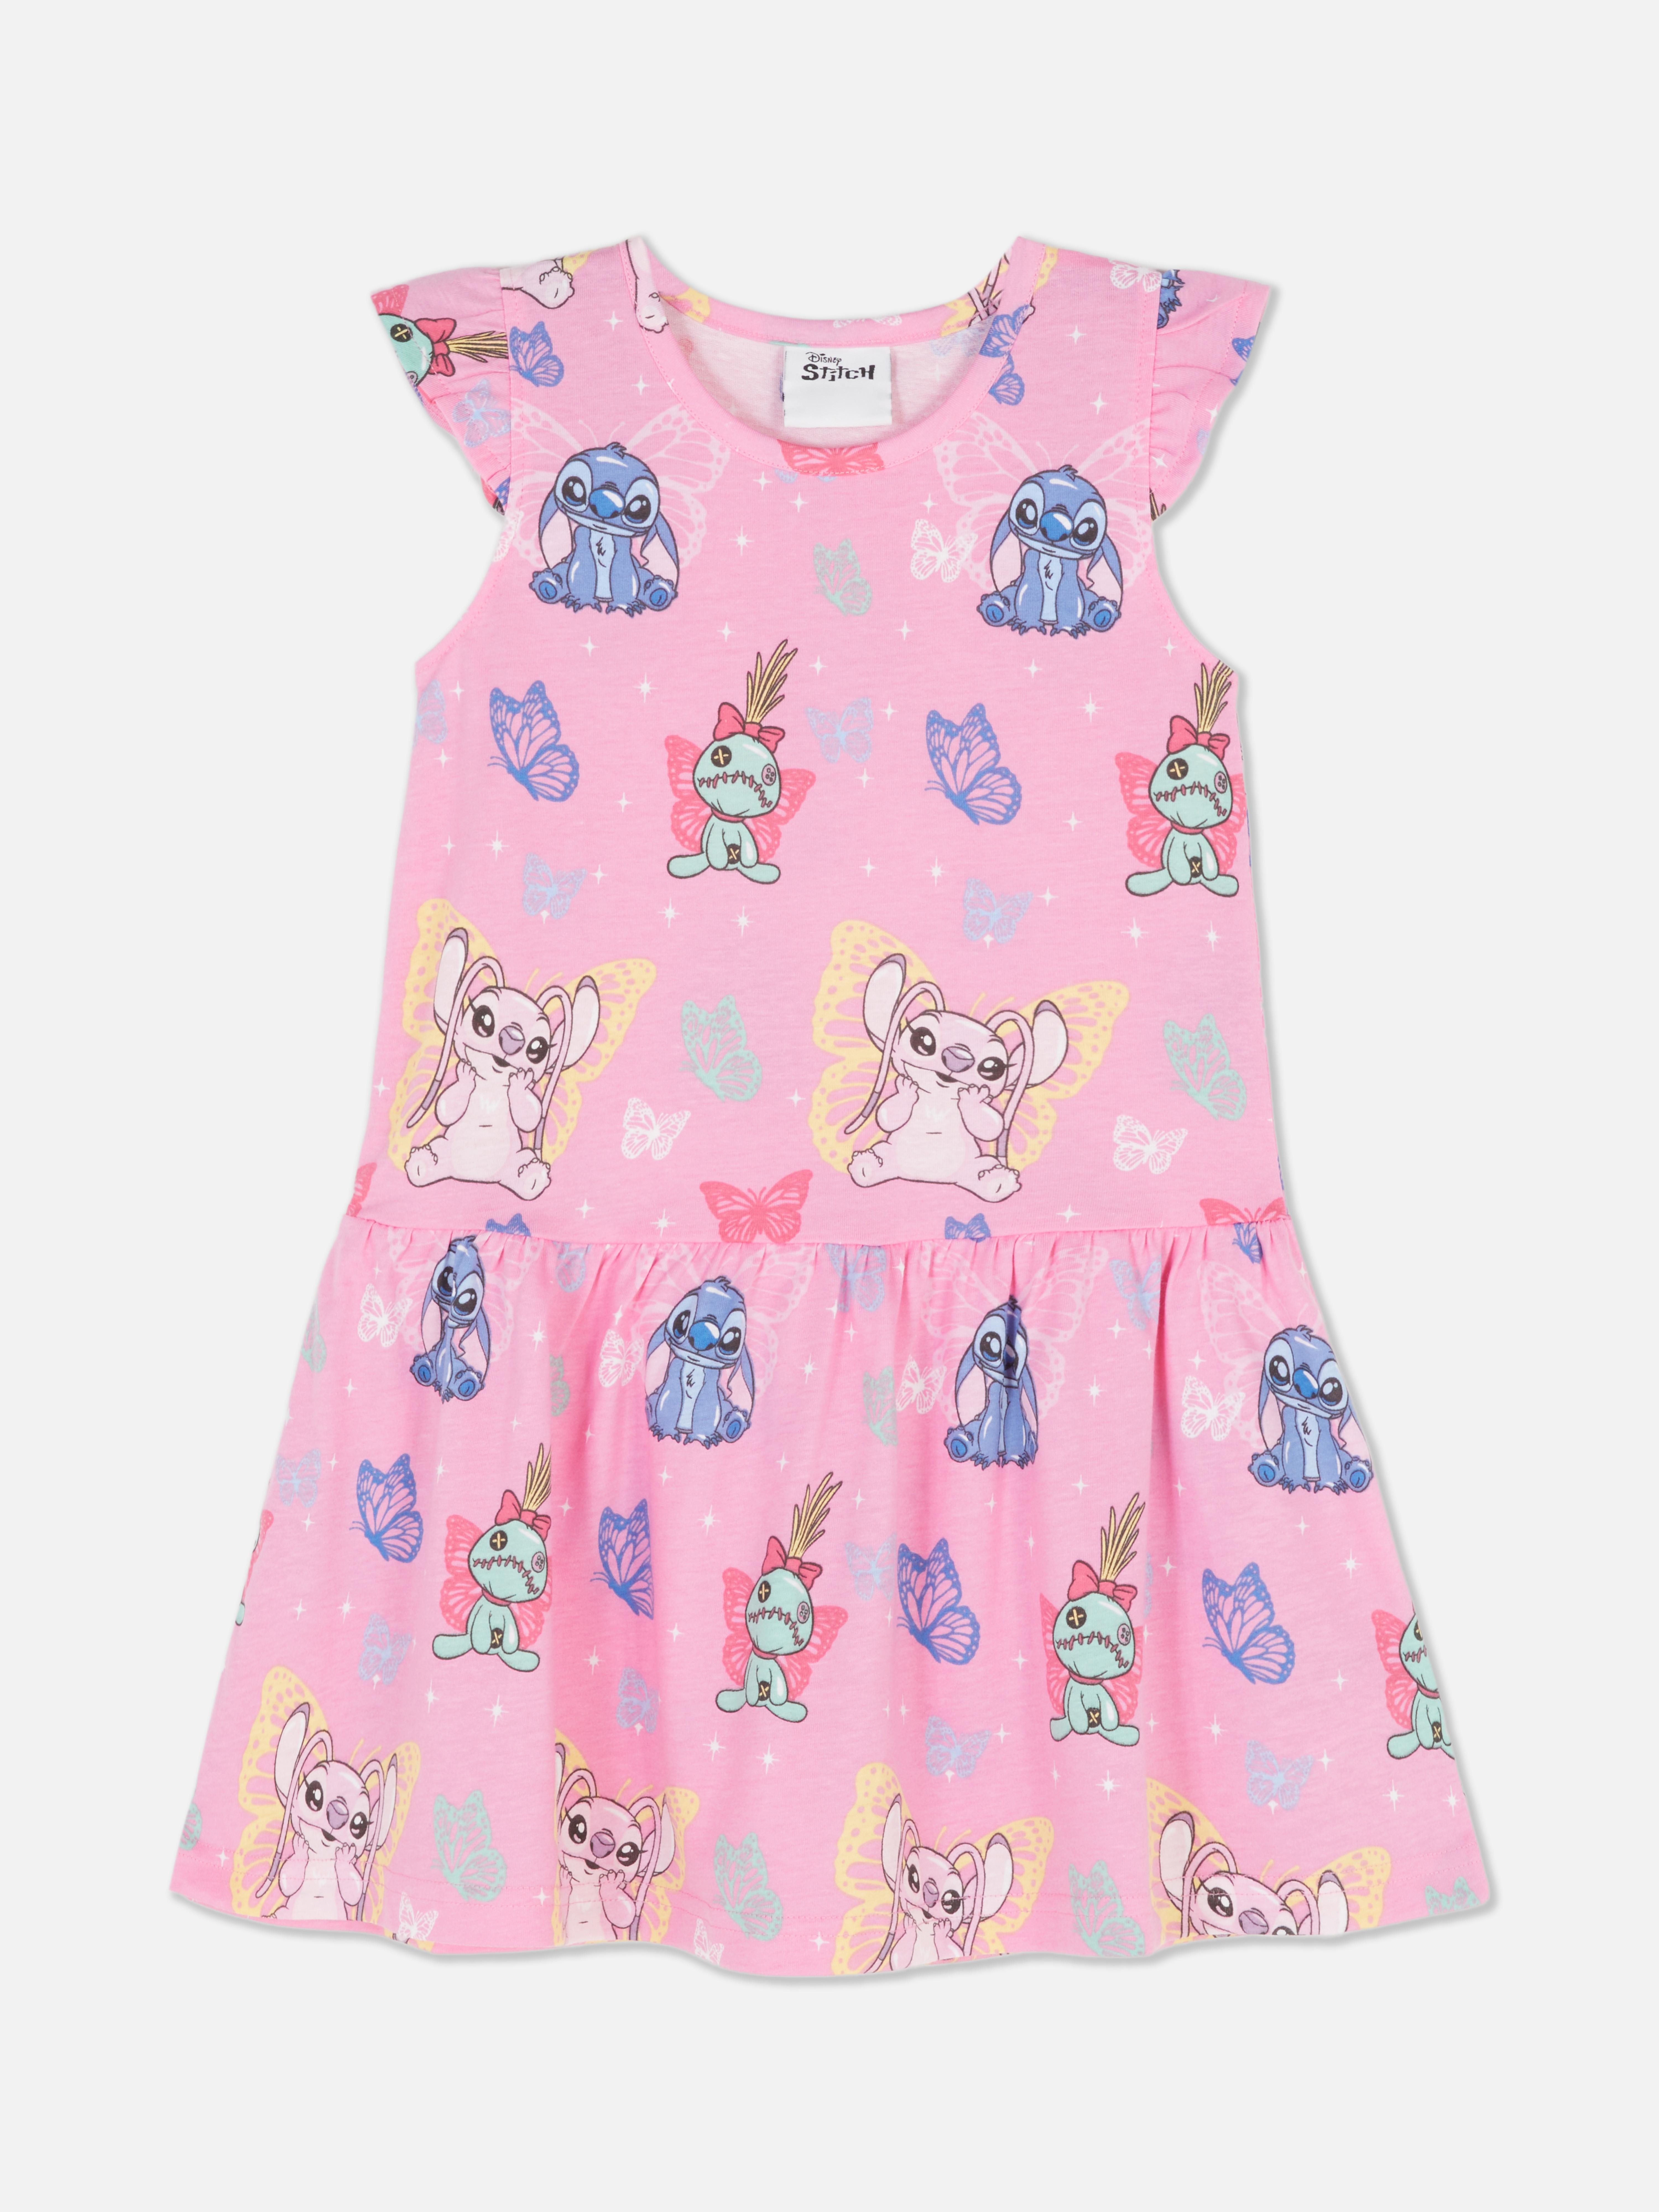 Disney’s Lilo & Stitch Sleeveless Dress